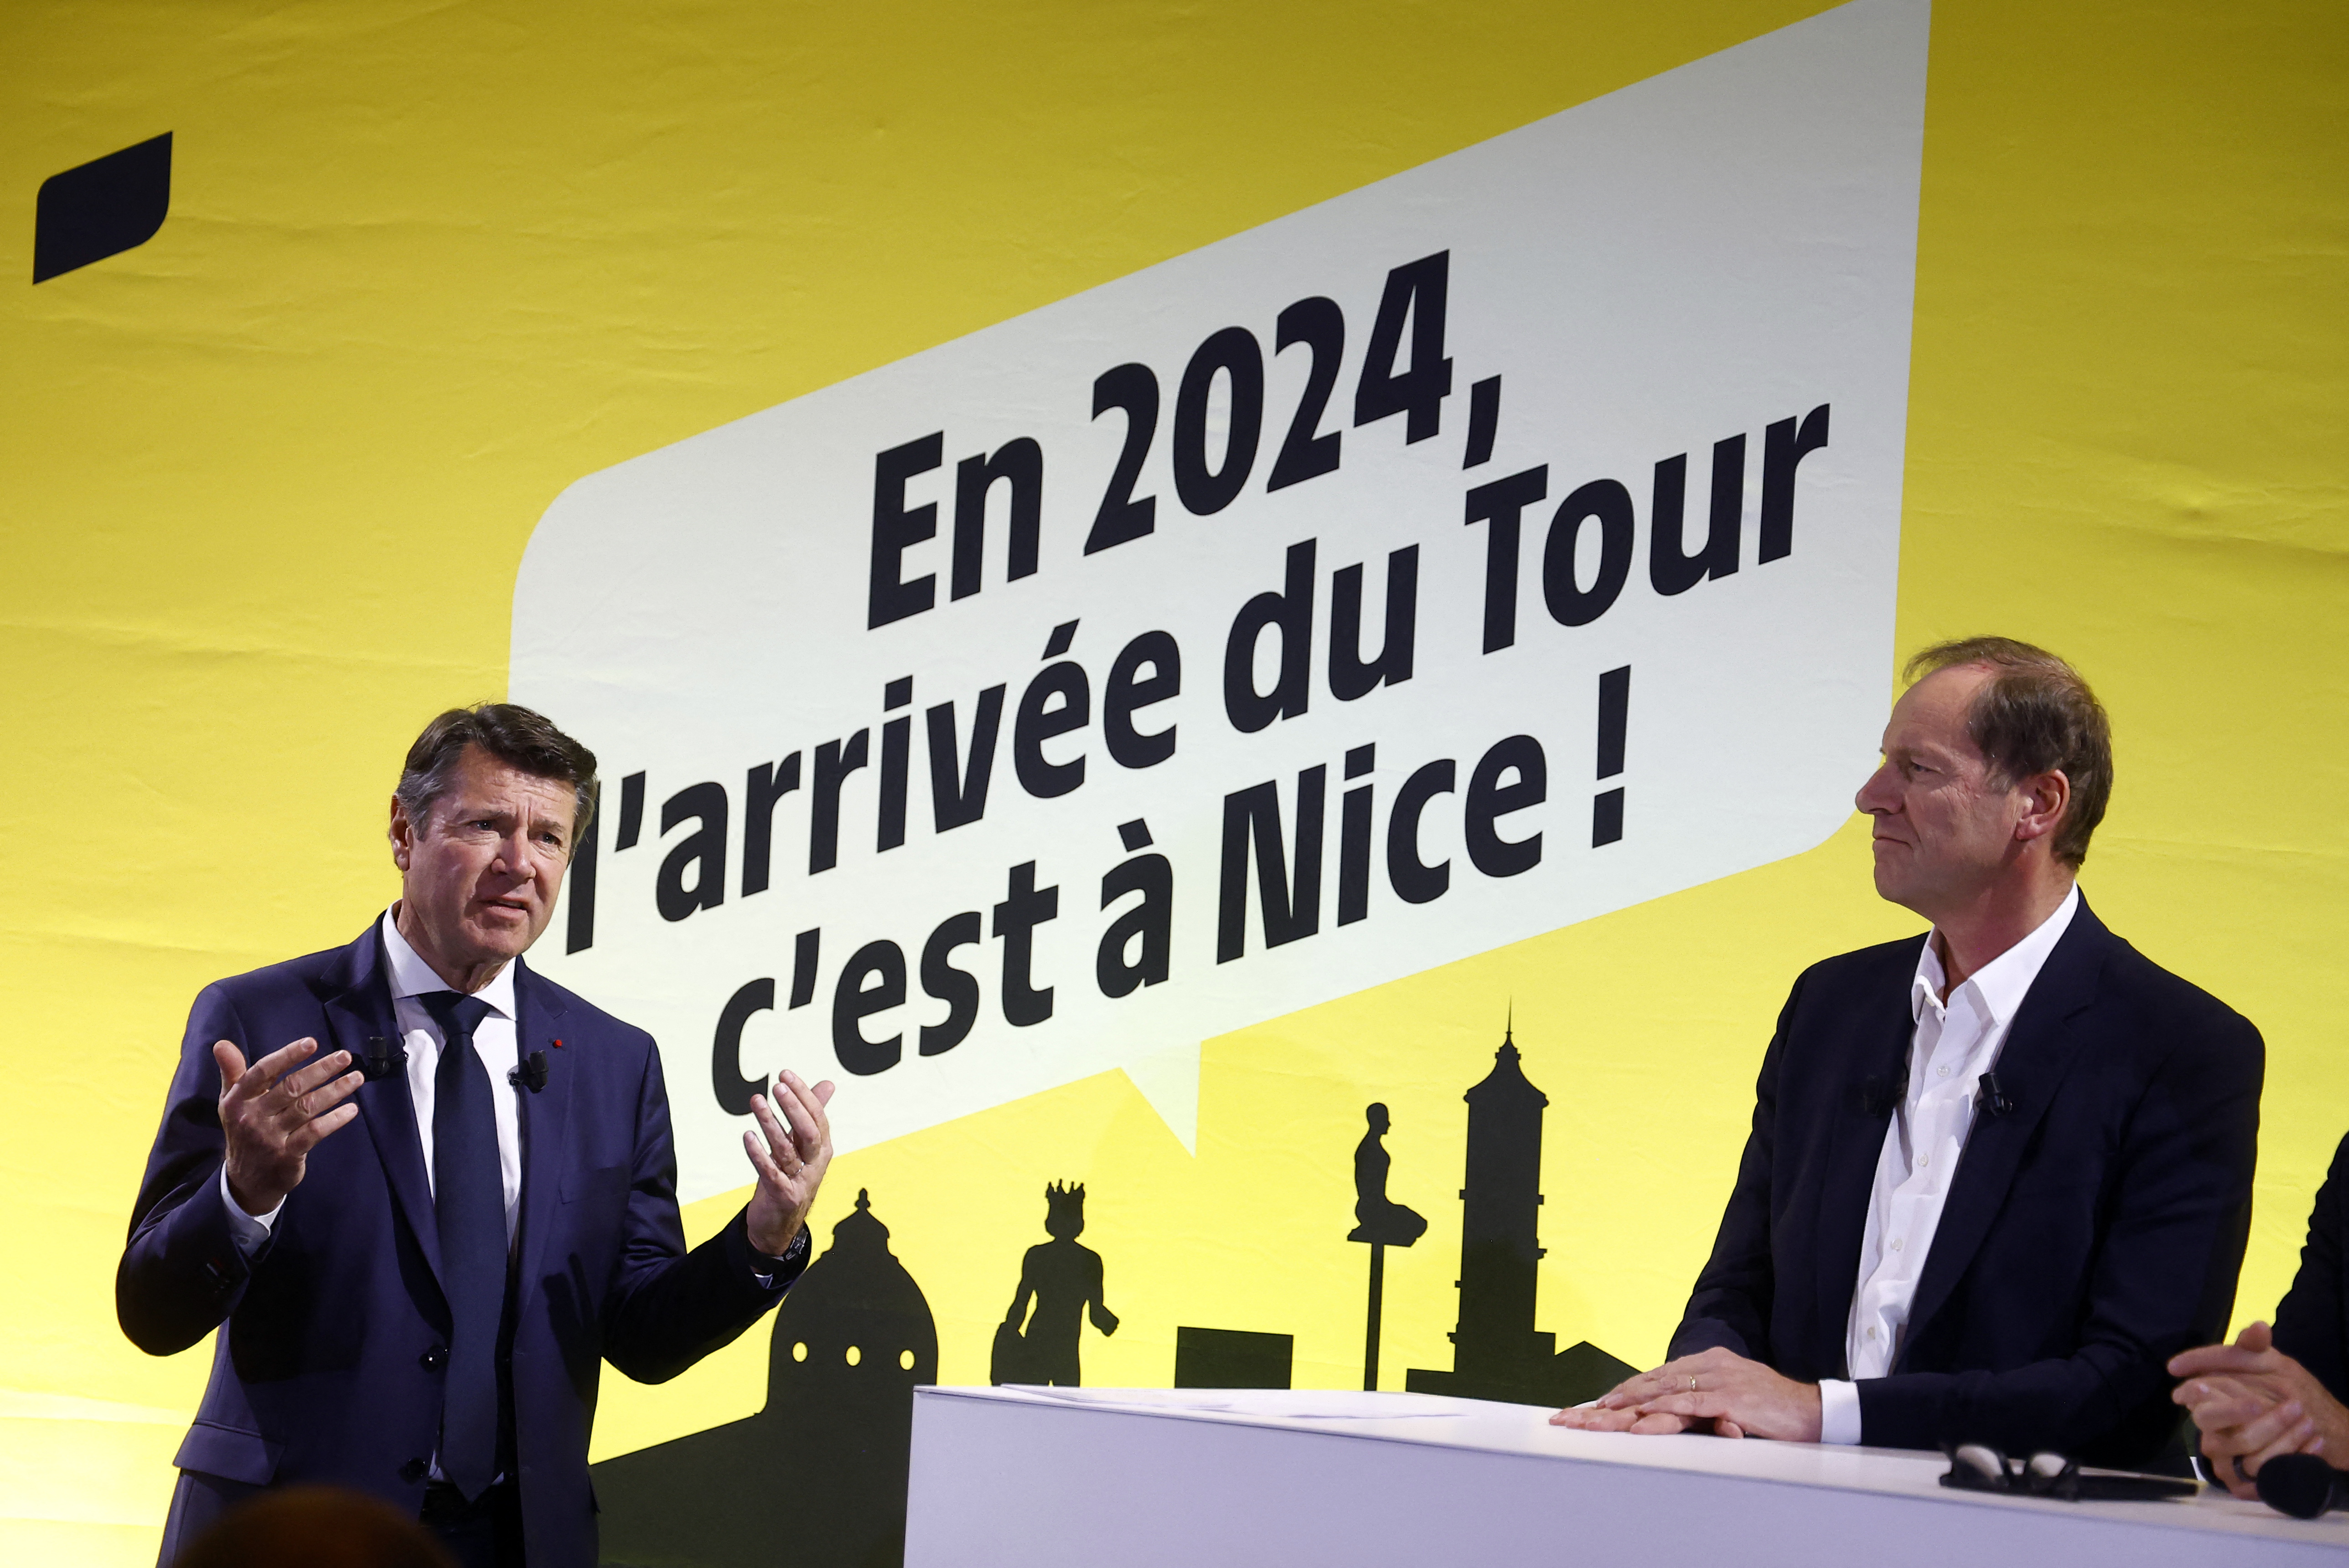 Tour de France 2024 Announcement